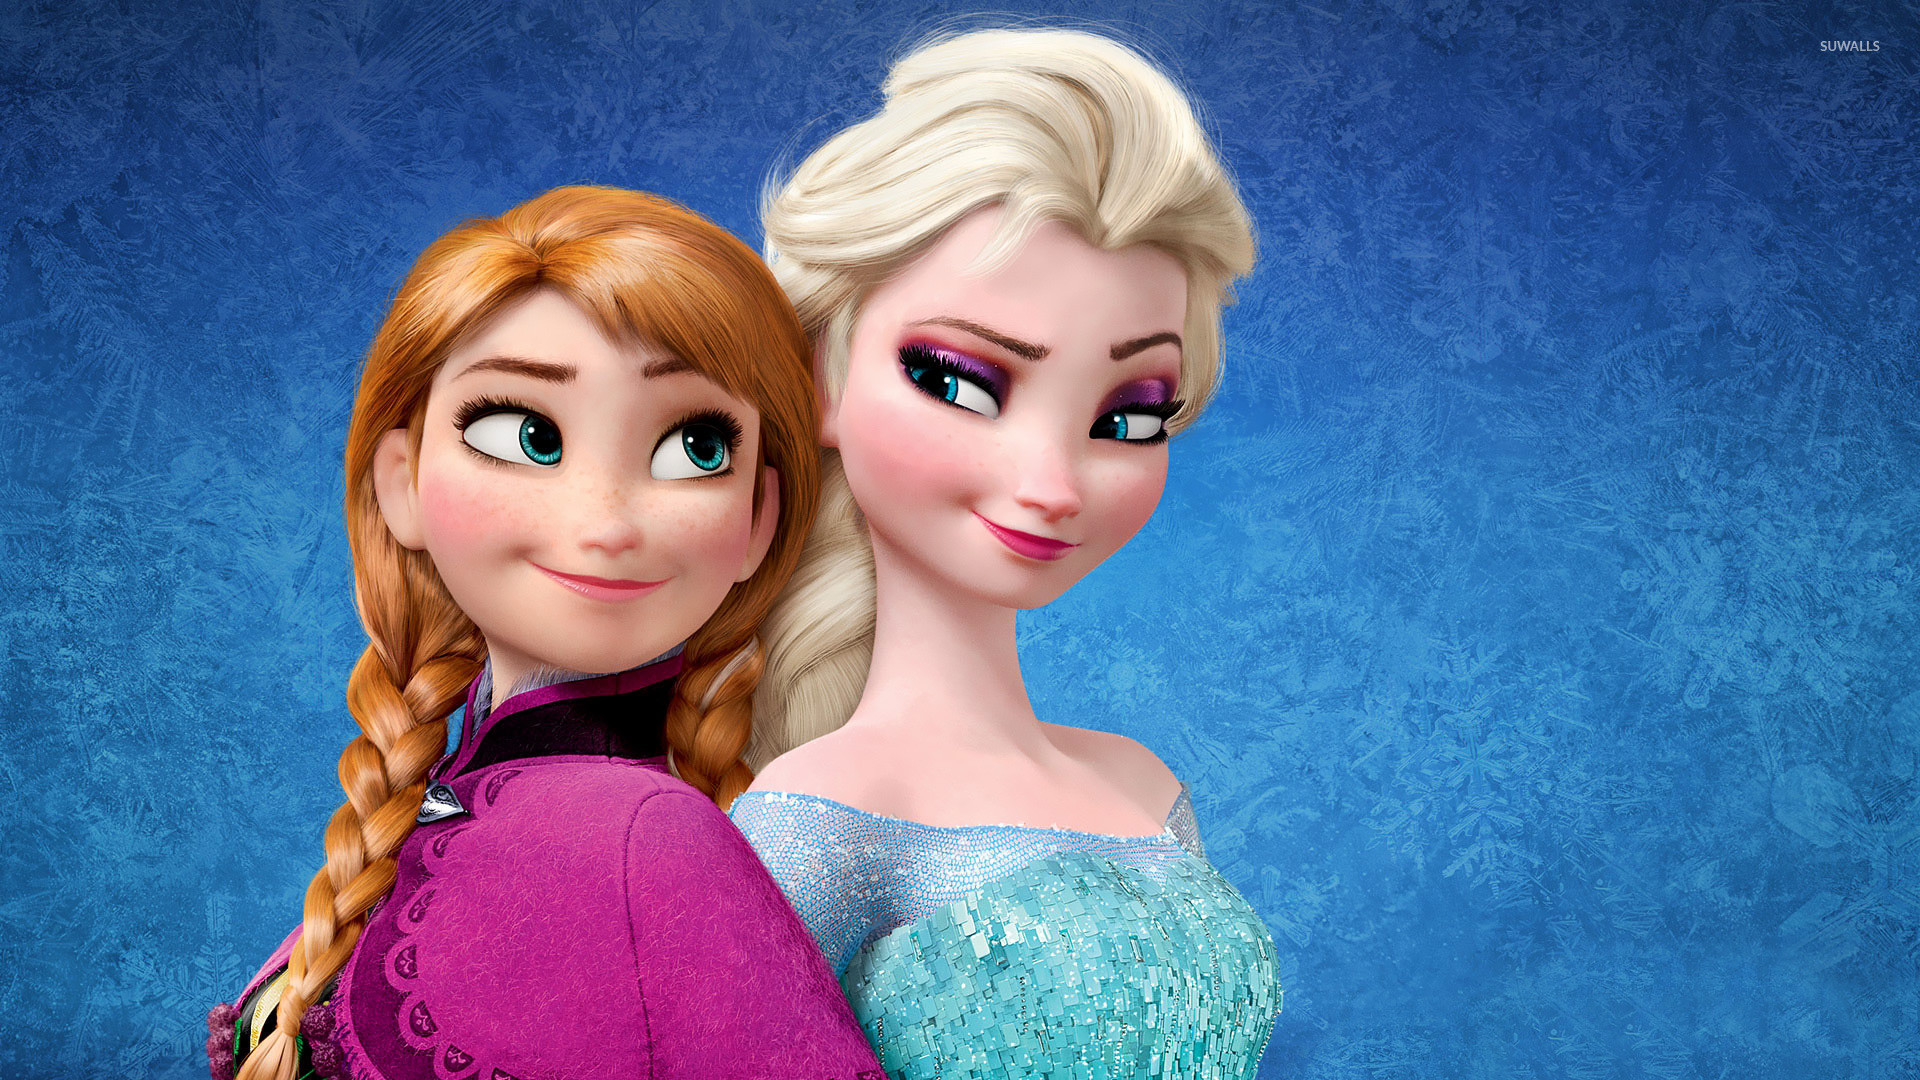 1920x1080 Elsa and Anna - Frozen wallpaper